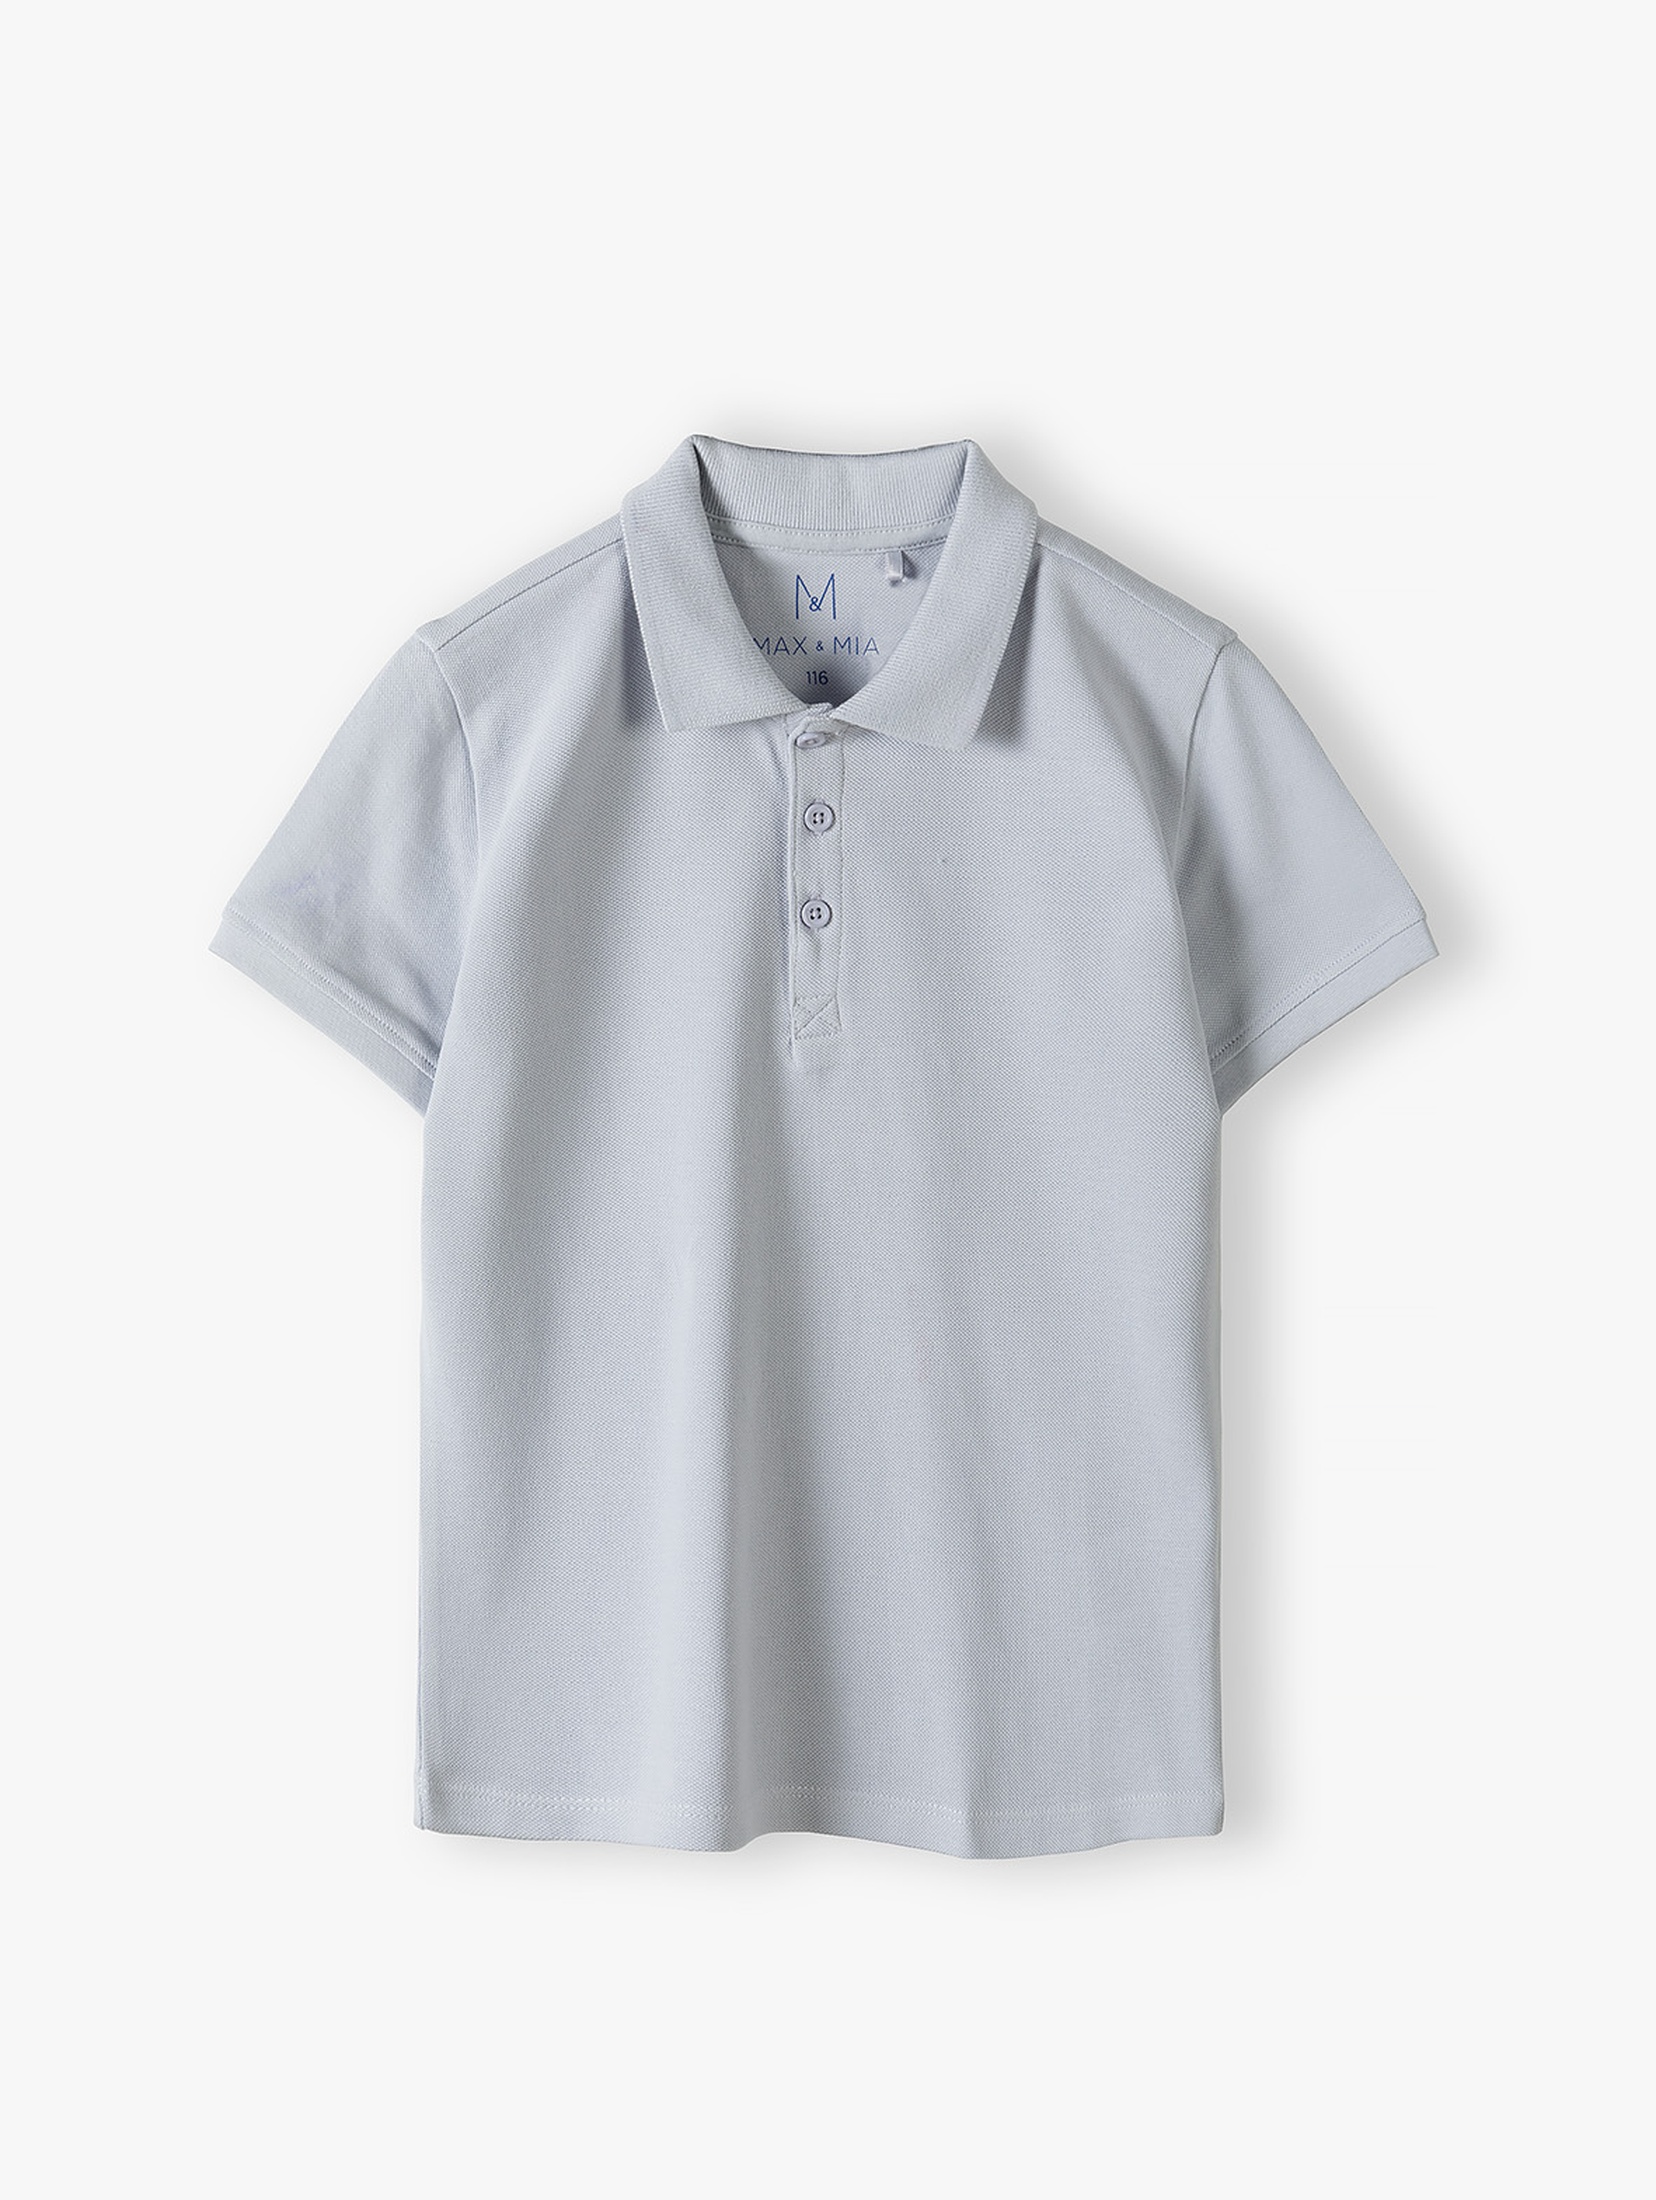 T-shirt polo dla chłopca - niebieski - Max&Mia